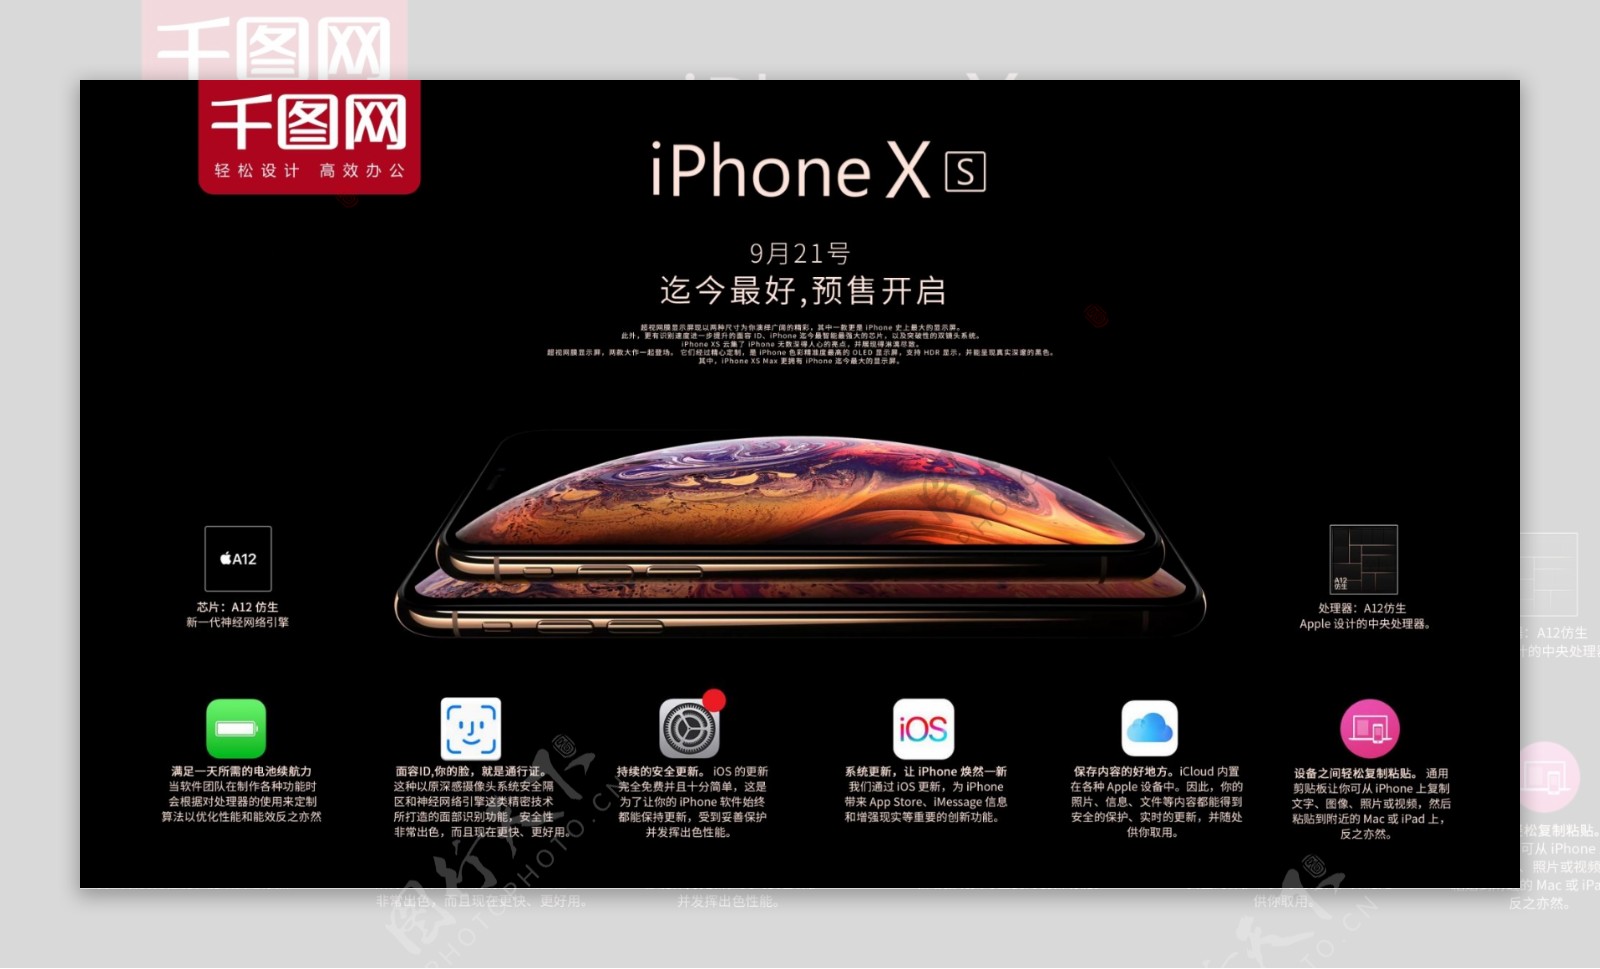 千图iphonexs促销宣传海报